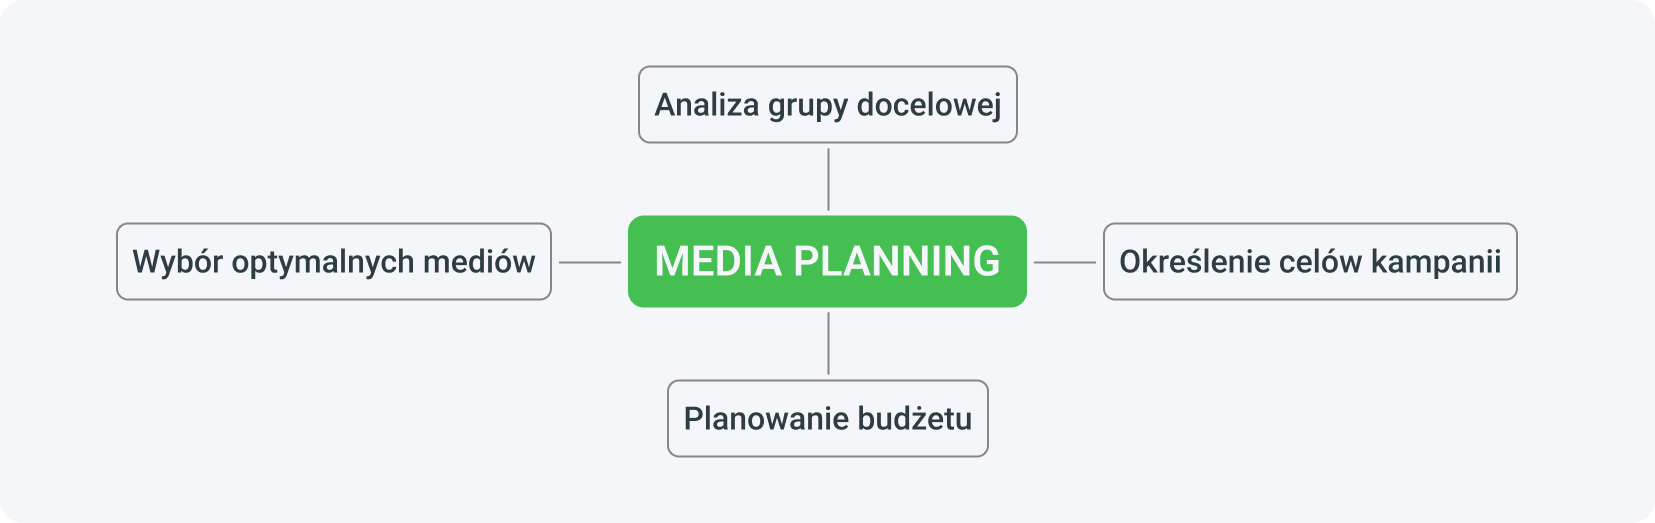 Media planning to przede wszystkim analiza grupy docelowej, określenie celów kampanii, wybór optymalnych mediów i planowanie budżetu.